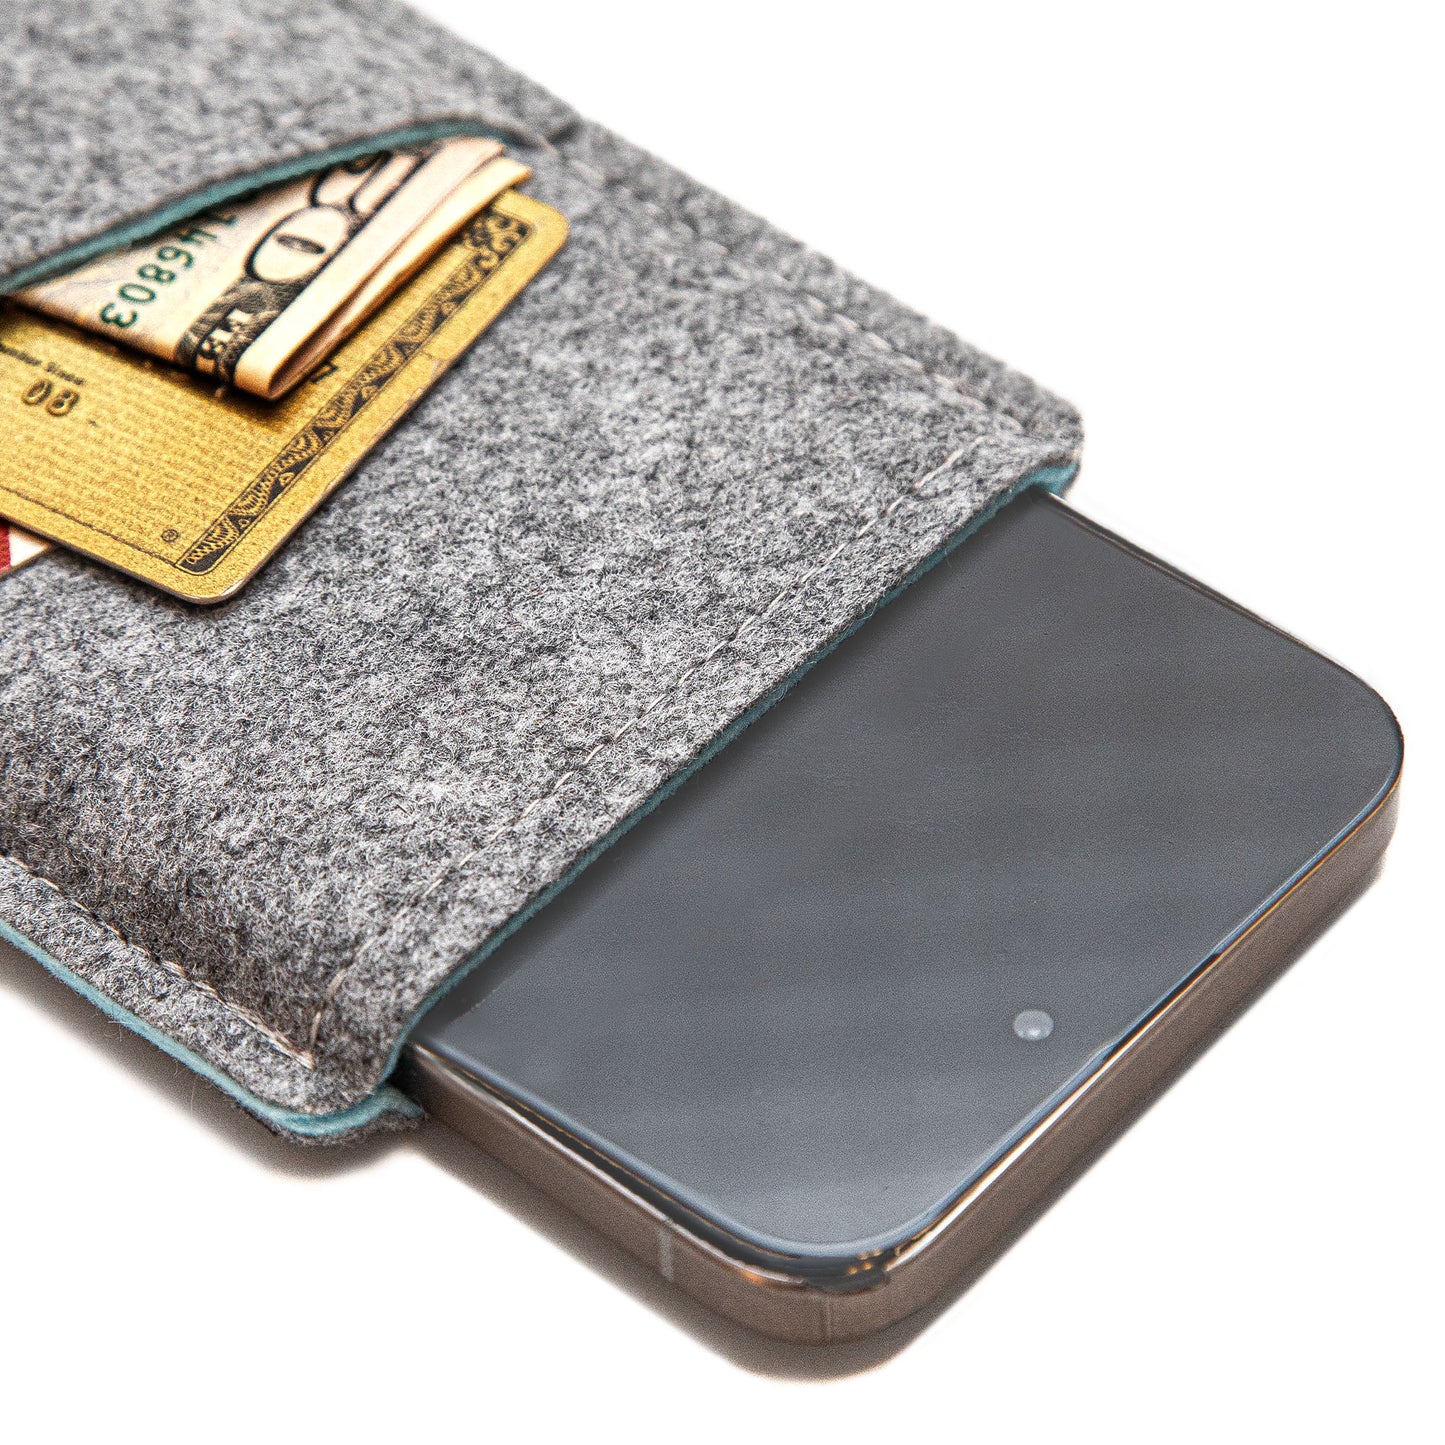 Premium Felt iPhone Sleeve with Card Pocket - Grey & Sky Blue